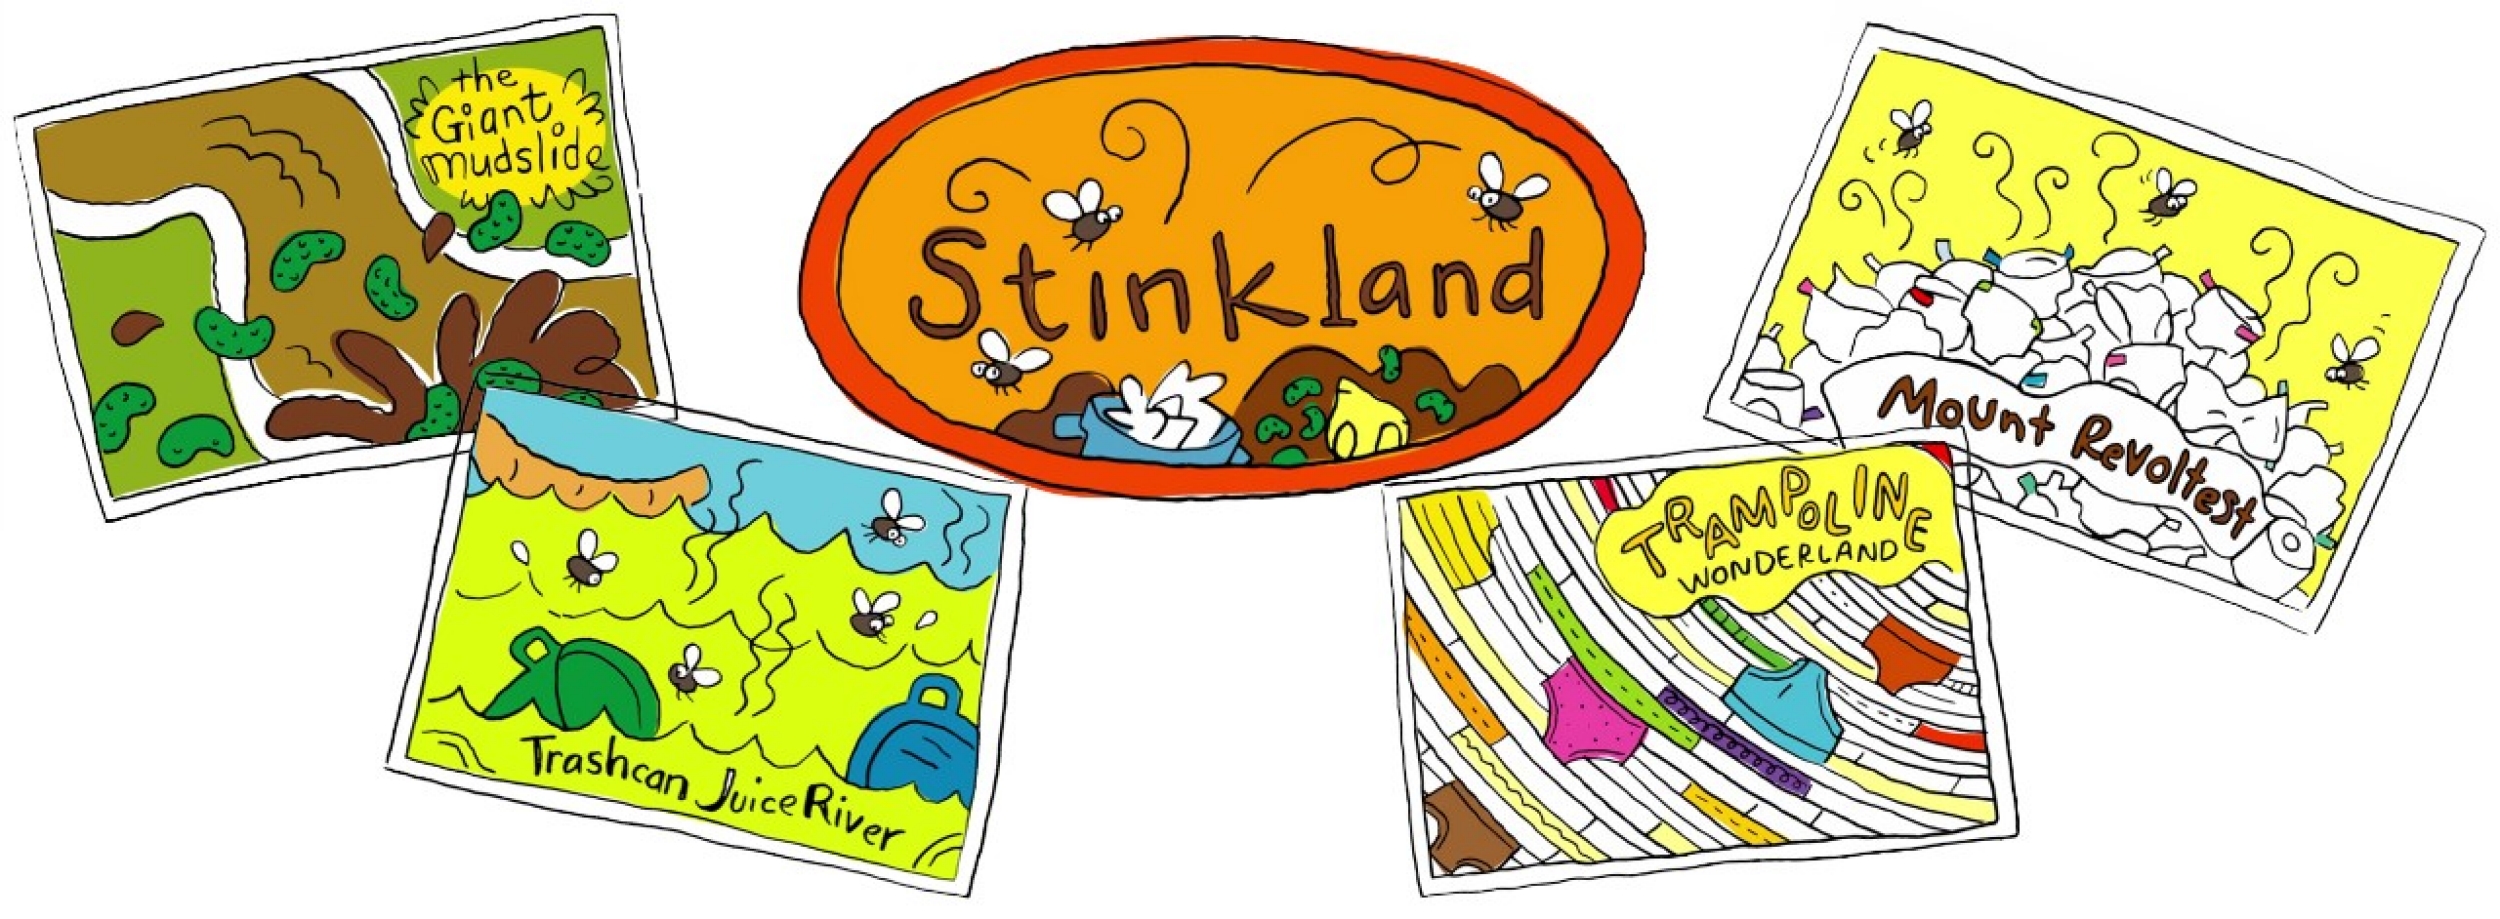 Stinkland